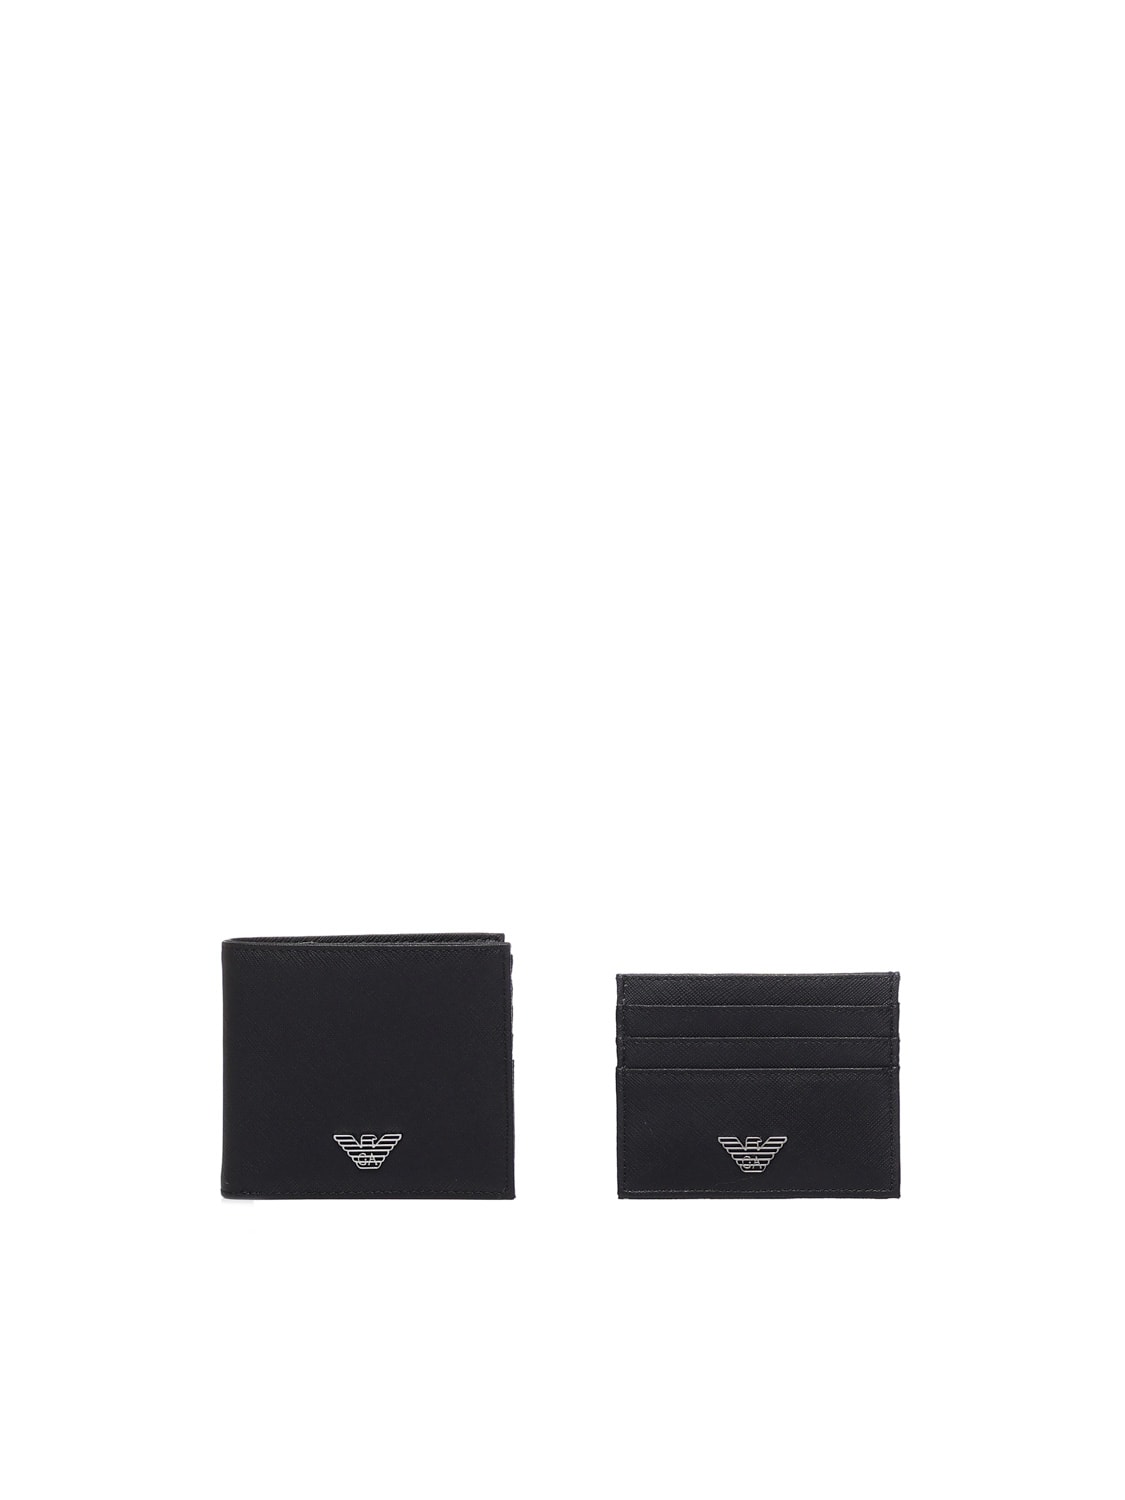 Emporio Armani Wallet With Application In Black